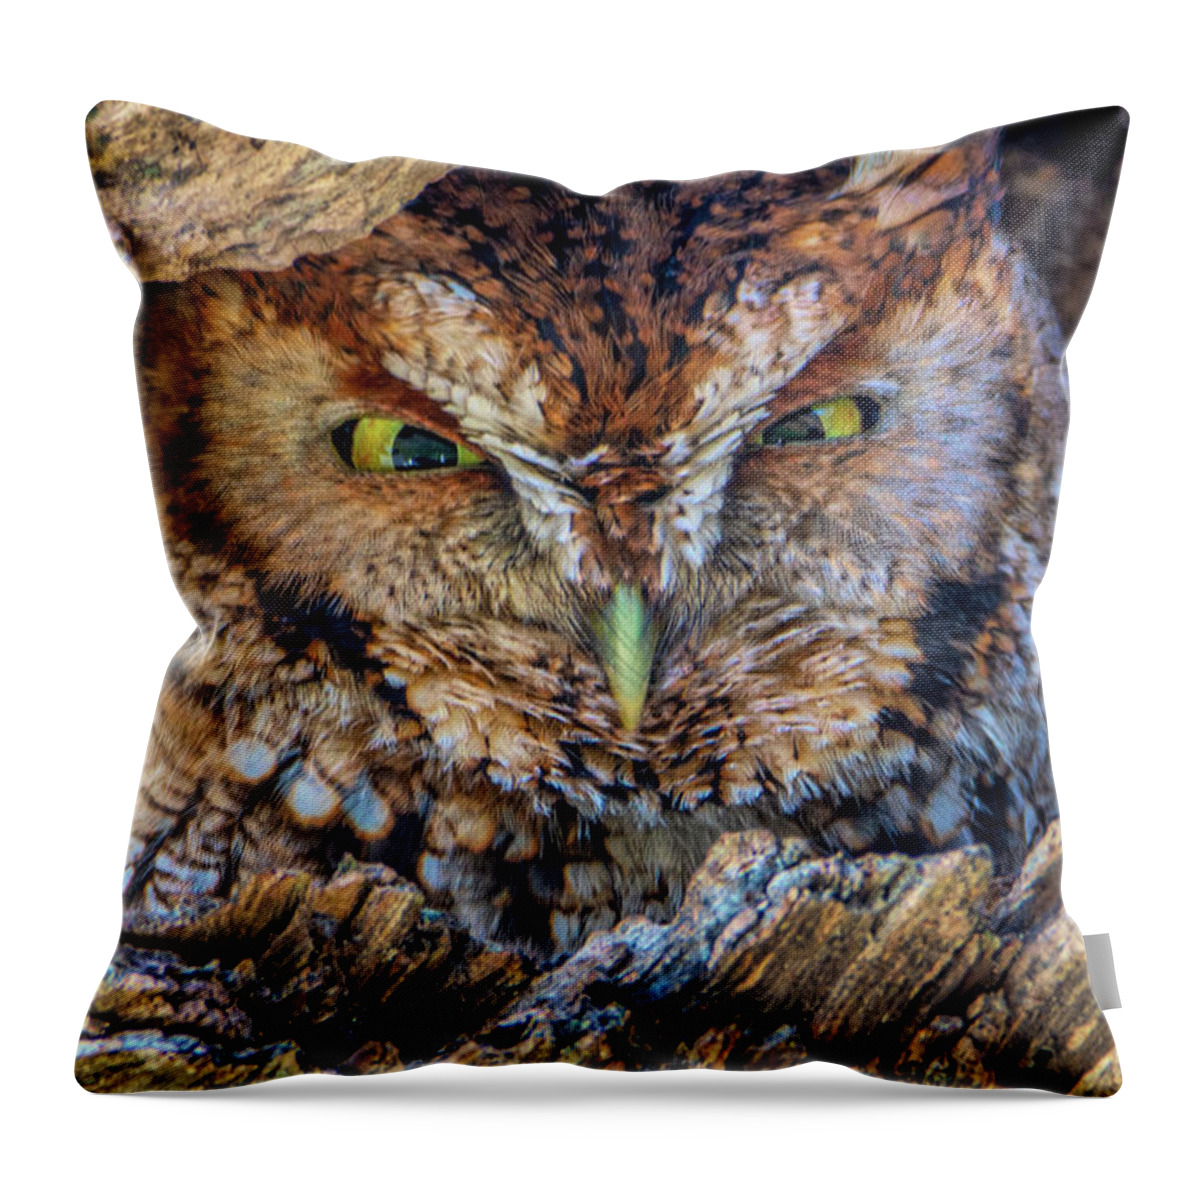 Eastern Screech Owl Throw Pillow featuring the photograph Shy Screech Owl by Douglas Wielfaert